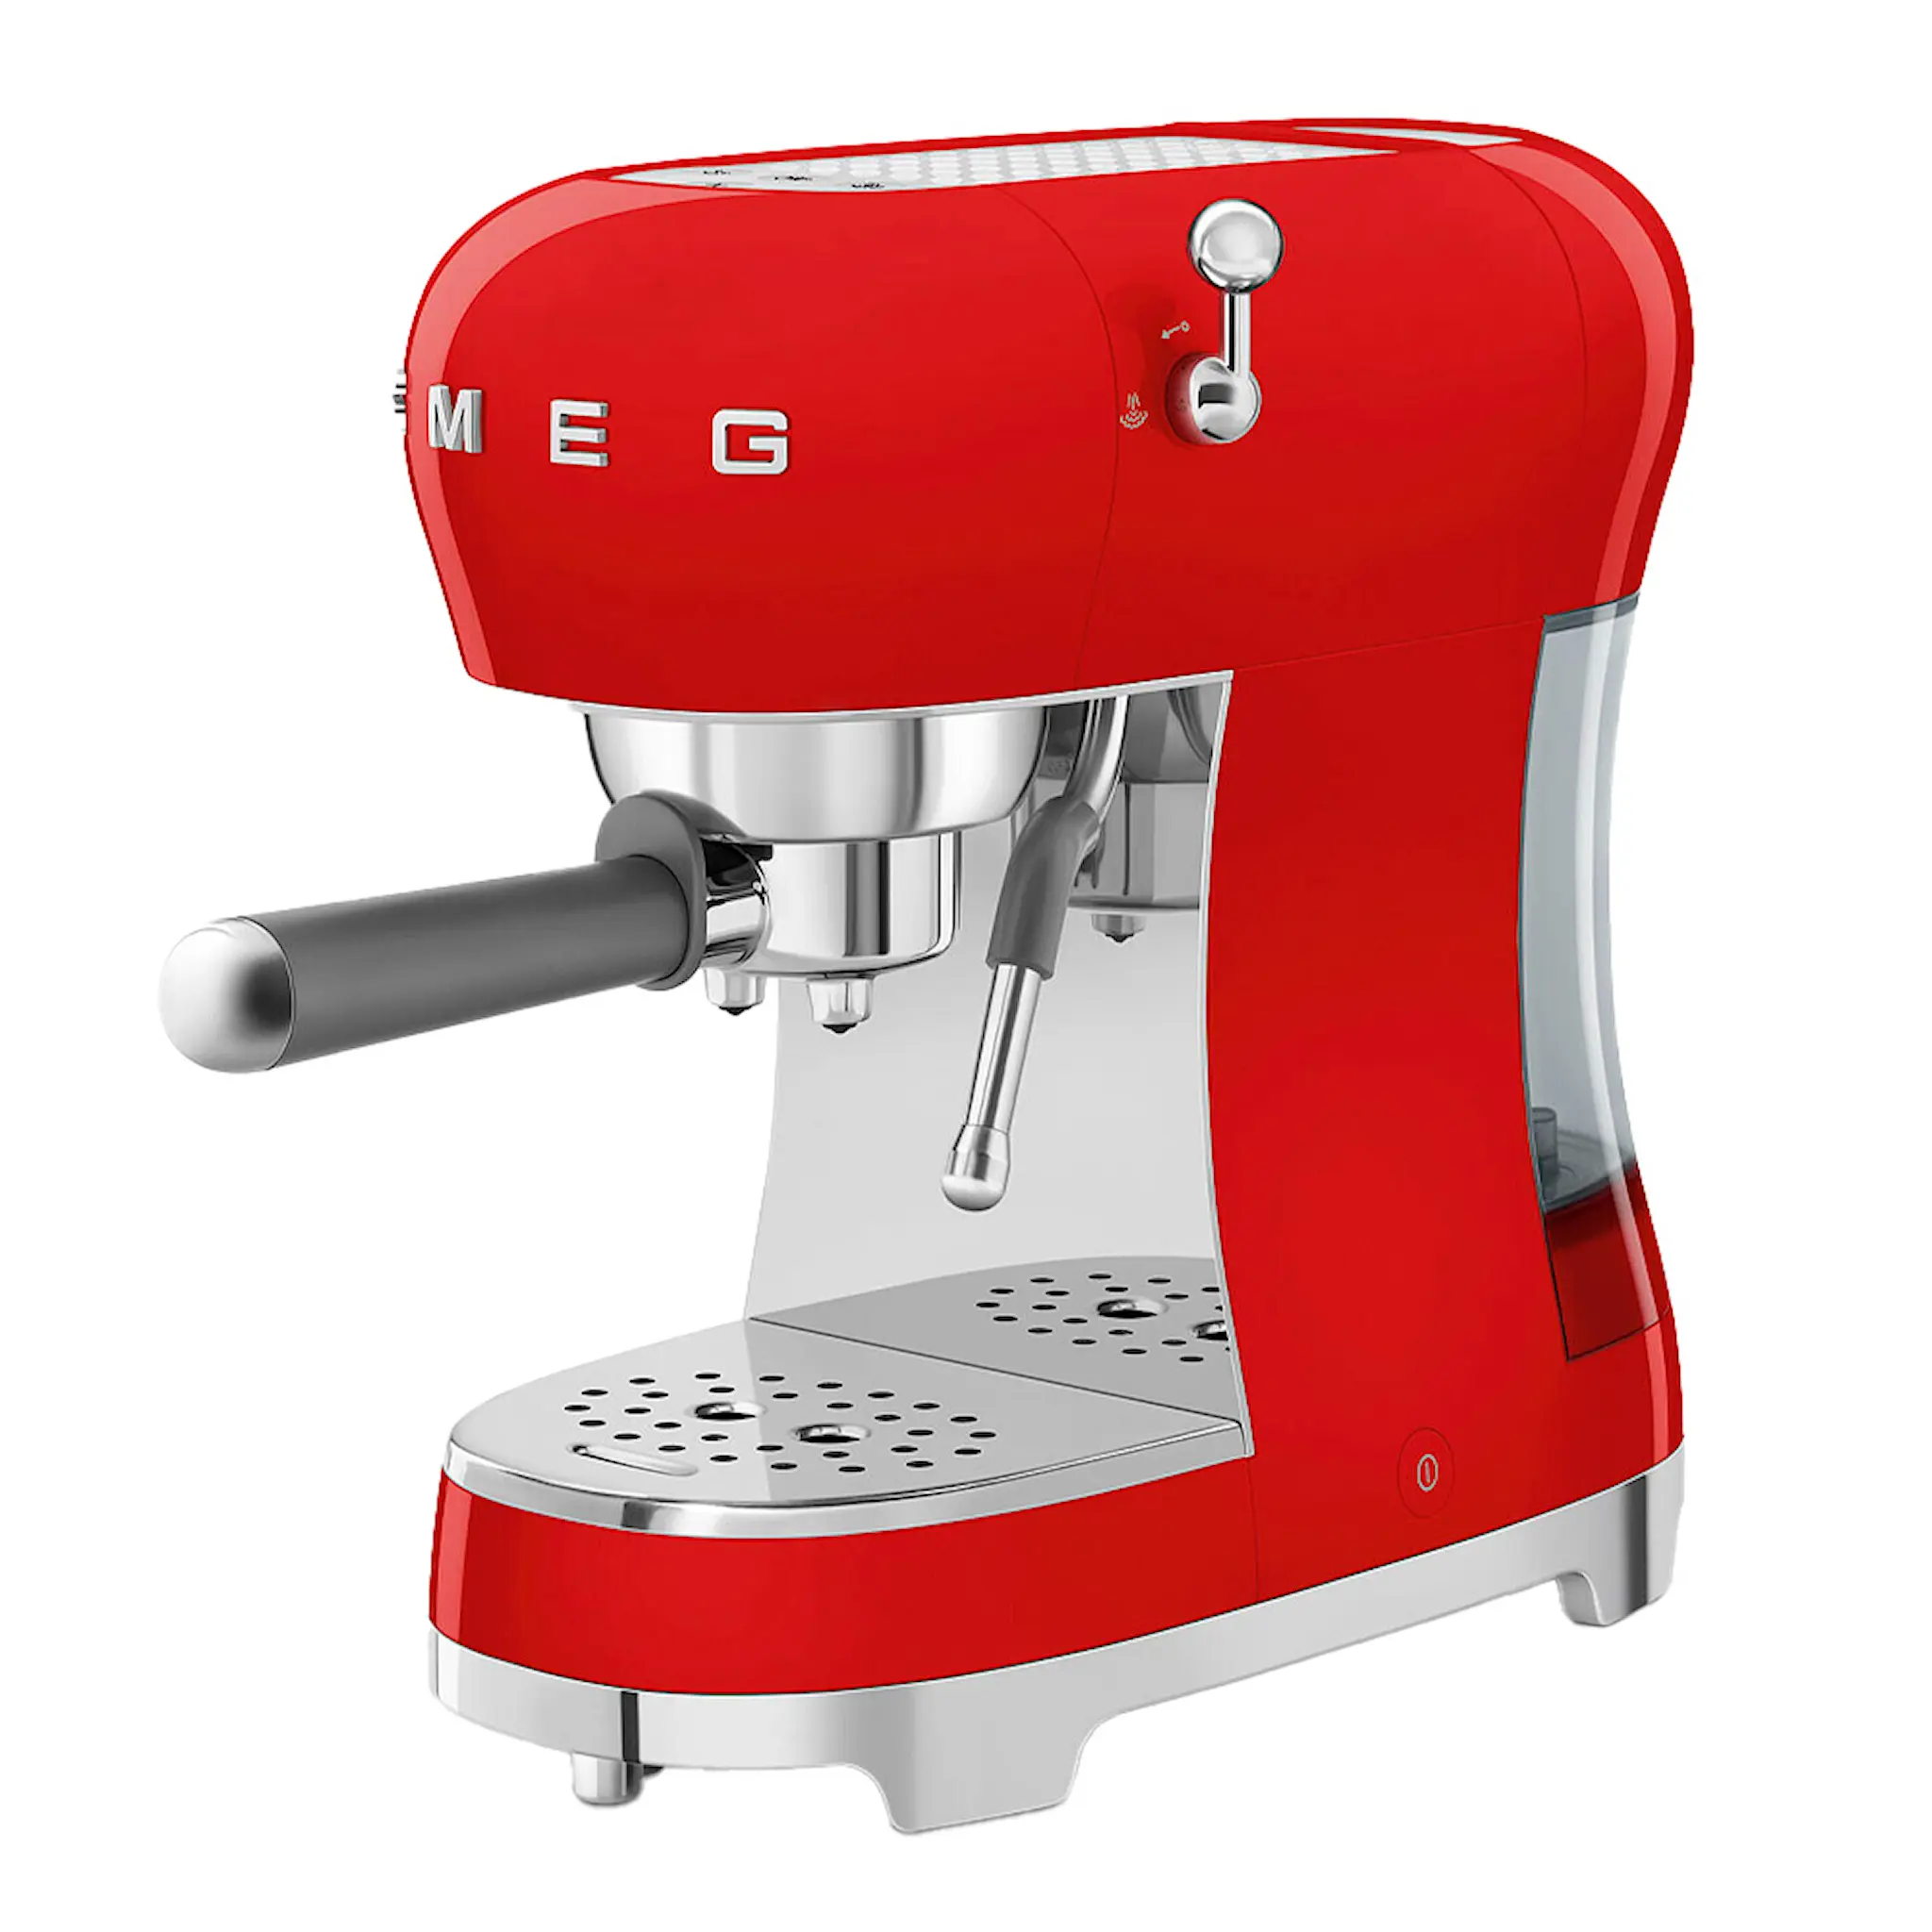 SMEG Smeg 50's Style Espressomaskin ECF02 Röd